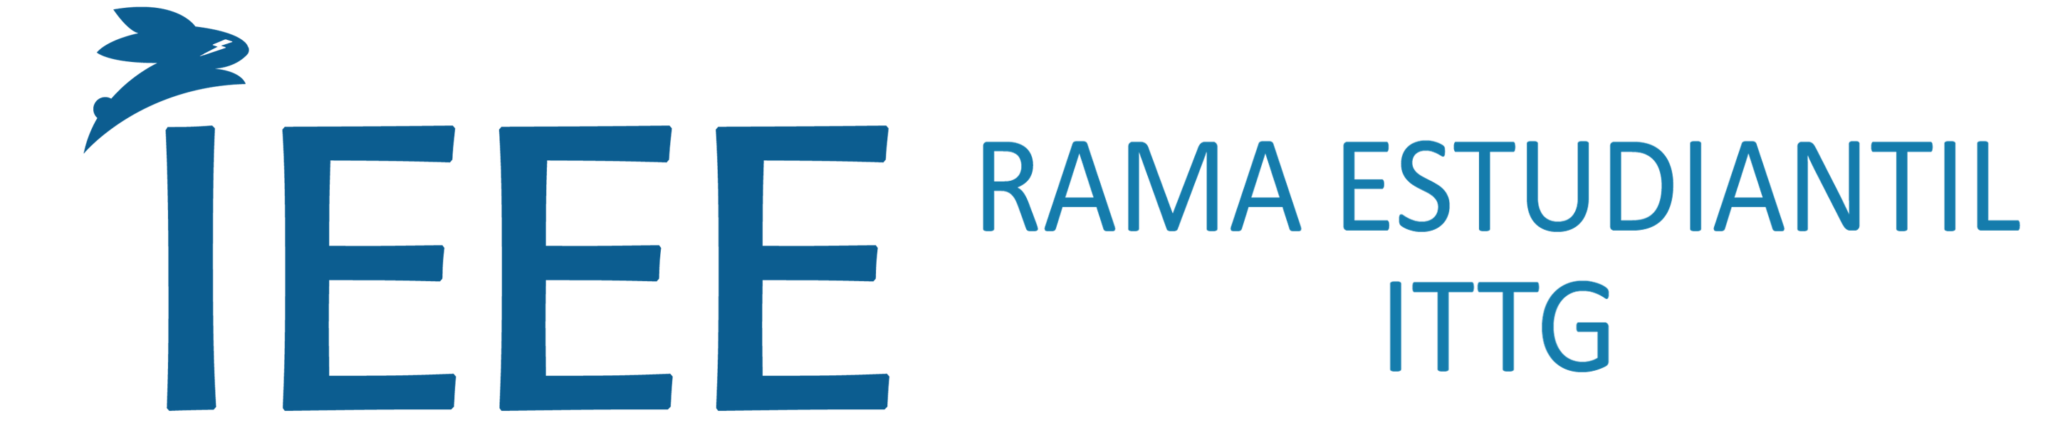 Rama Estudiantil-IEEE del Instituto  Tecnológico de Tuxtla